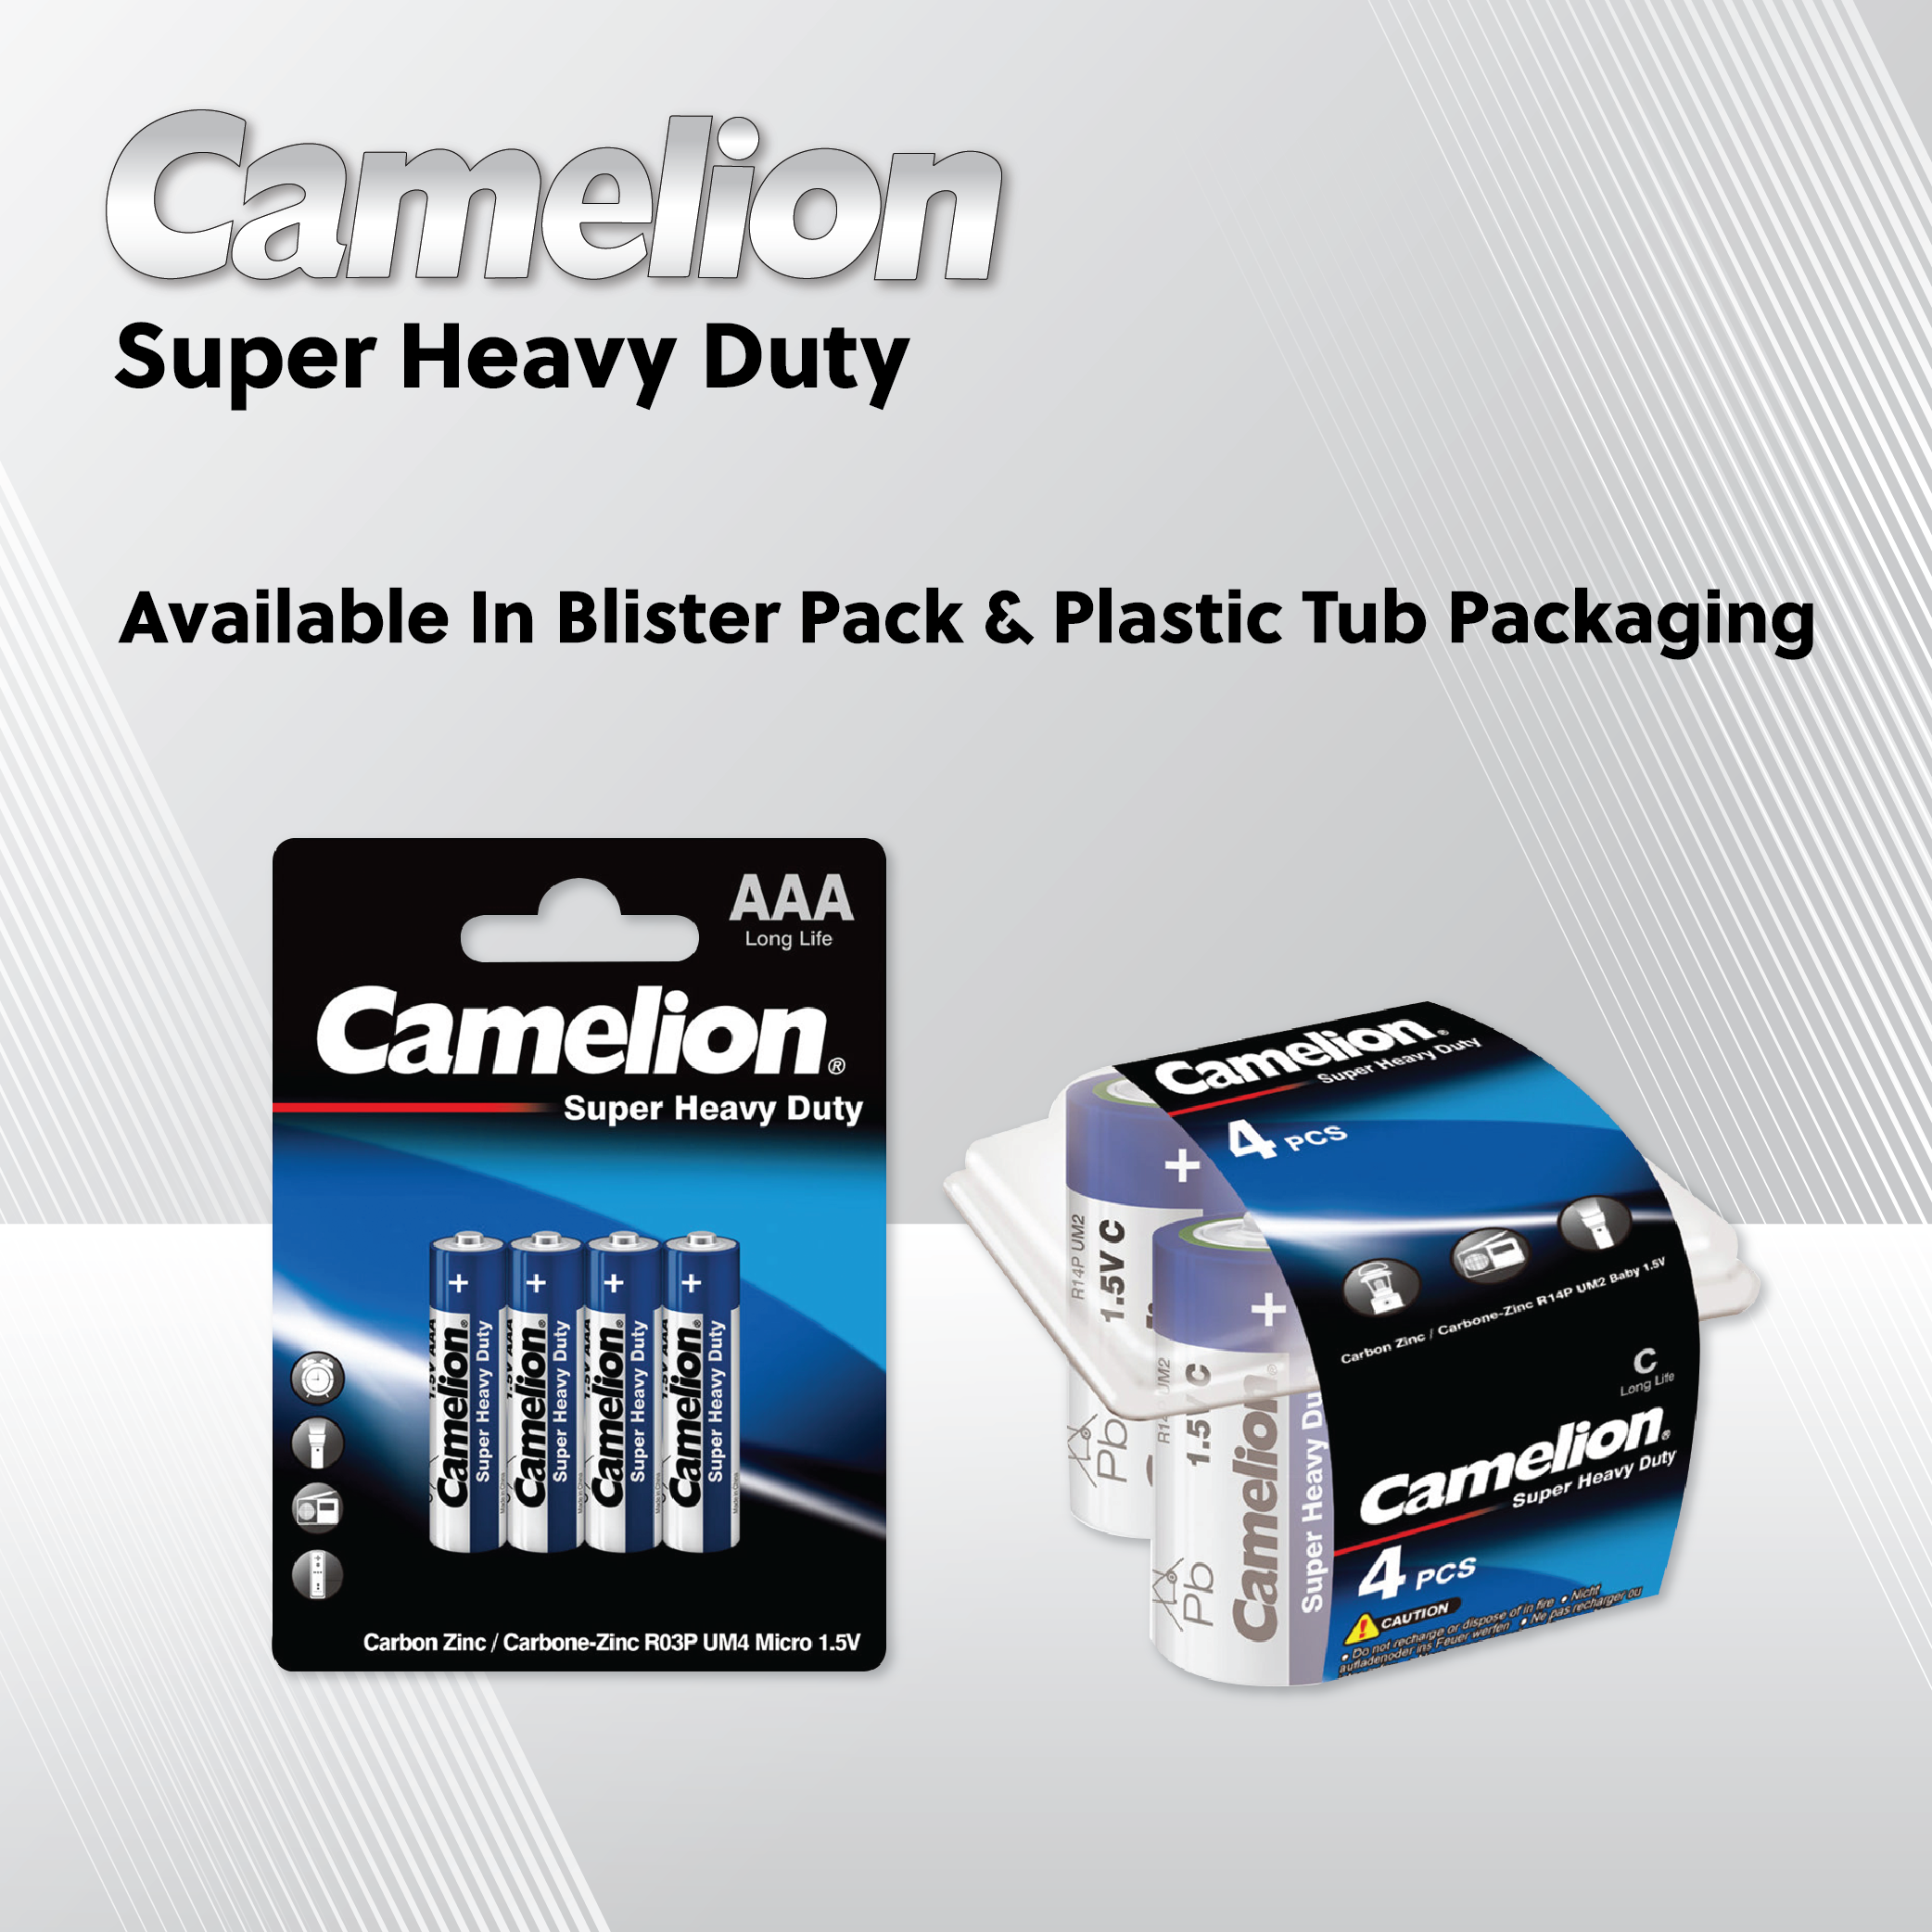 Camelion AAA Super Heavy Duty